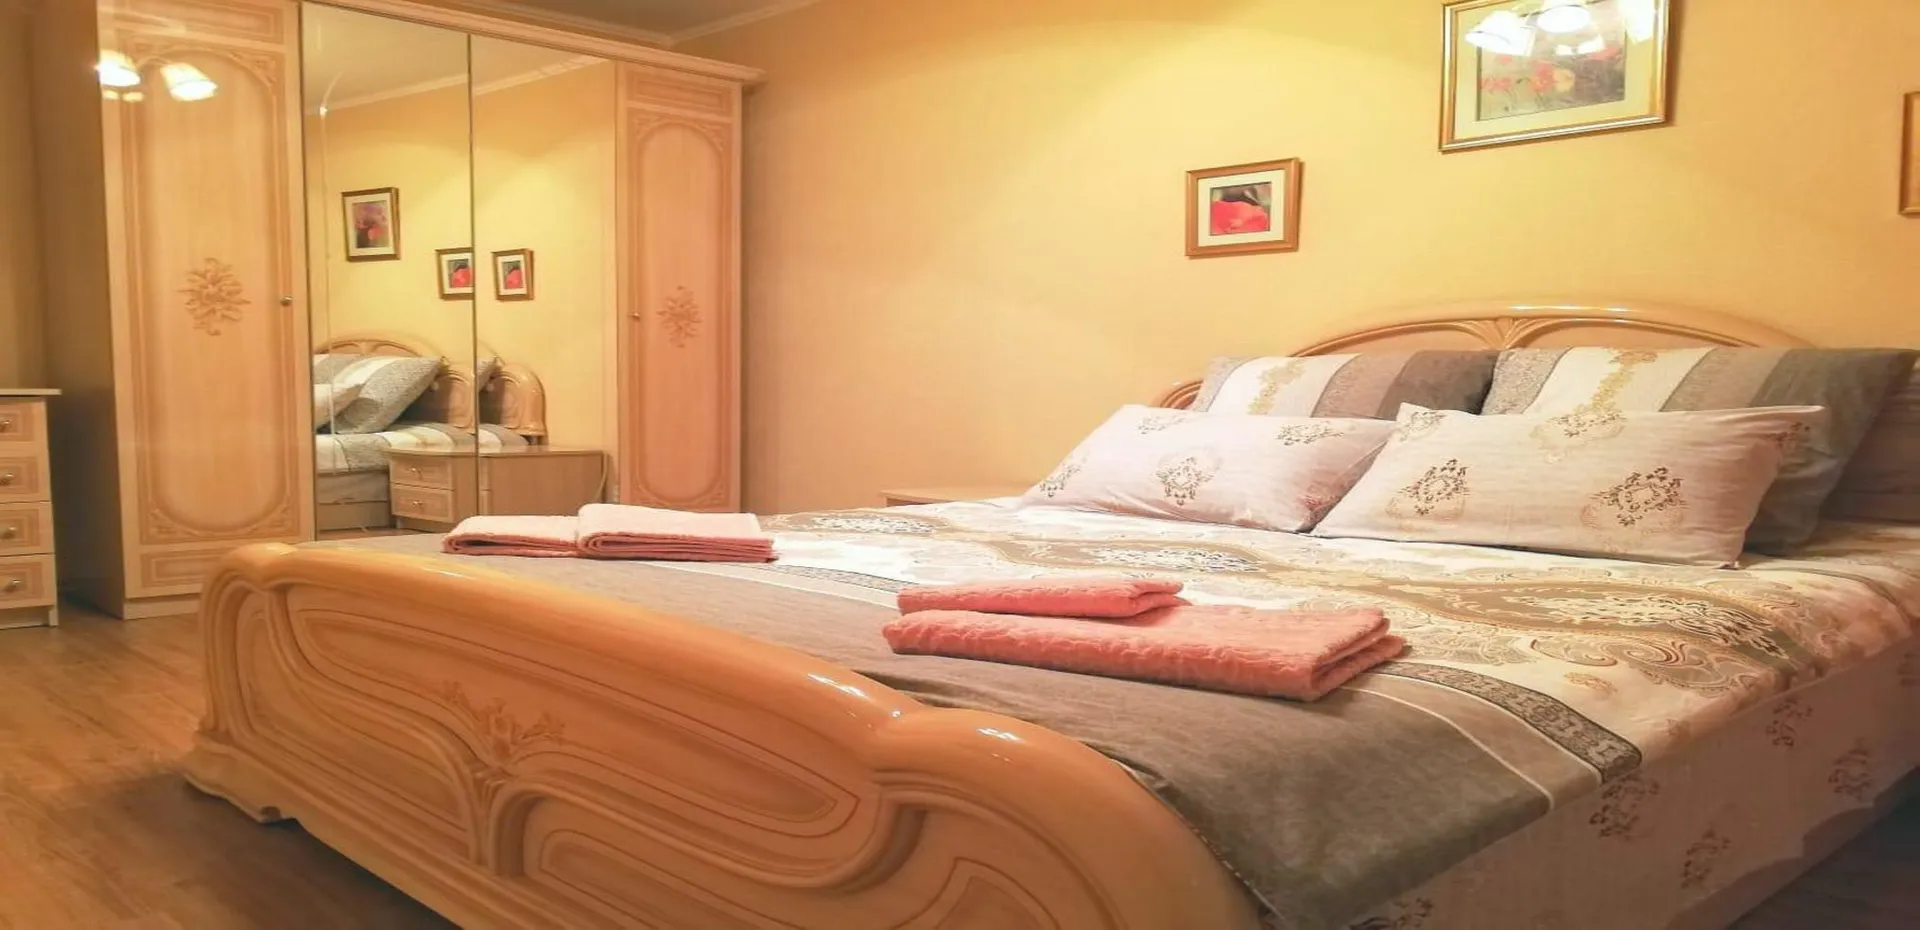 Уютная спальня с большой двуспальной кроватью и ортопедическим матрасом. Постельное белье - индийский сатин. Полотенца велюровые.